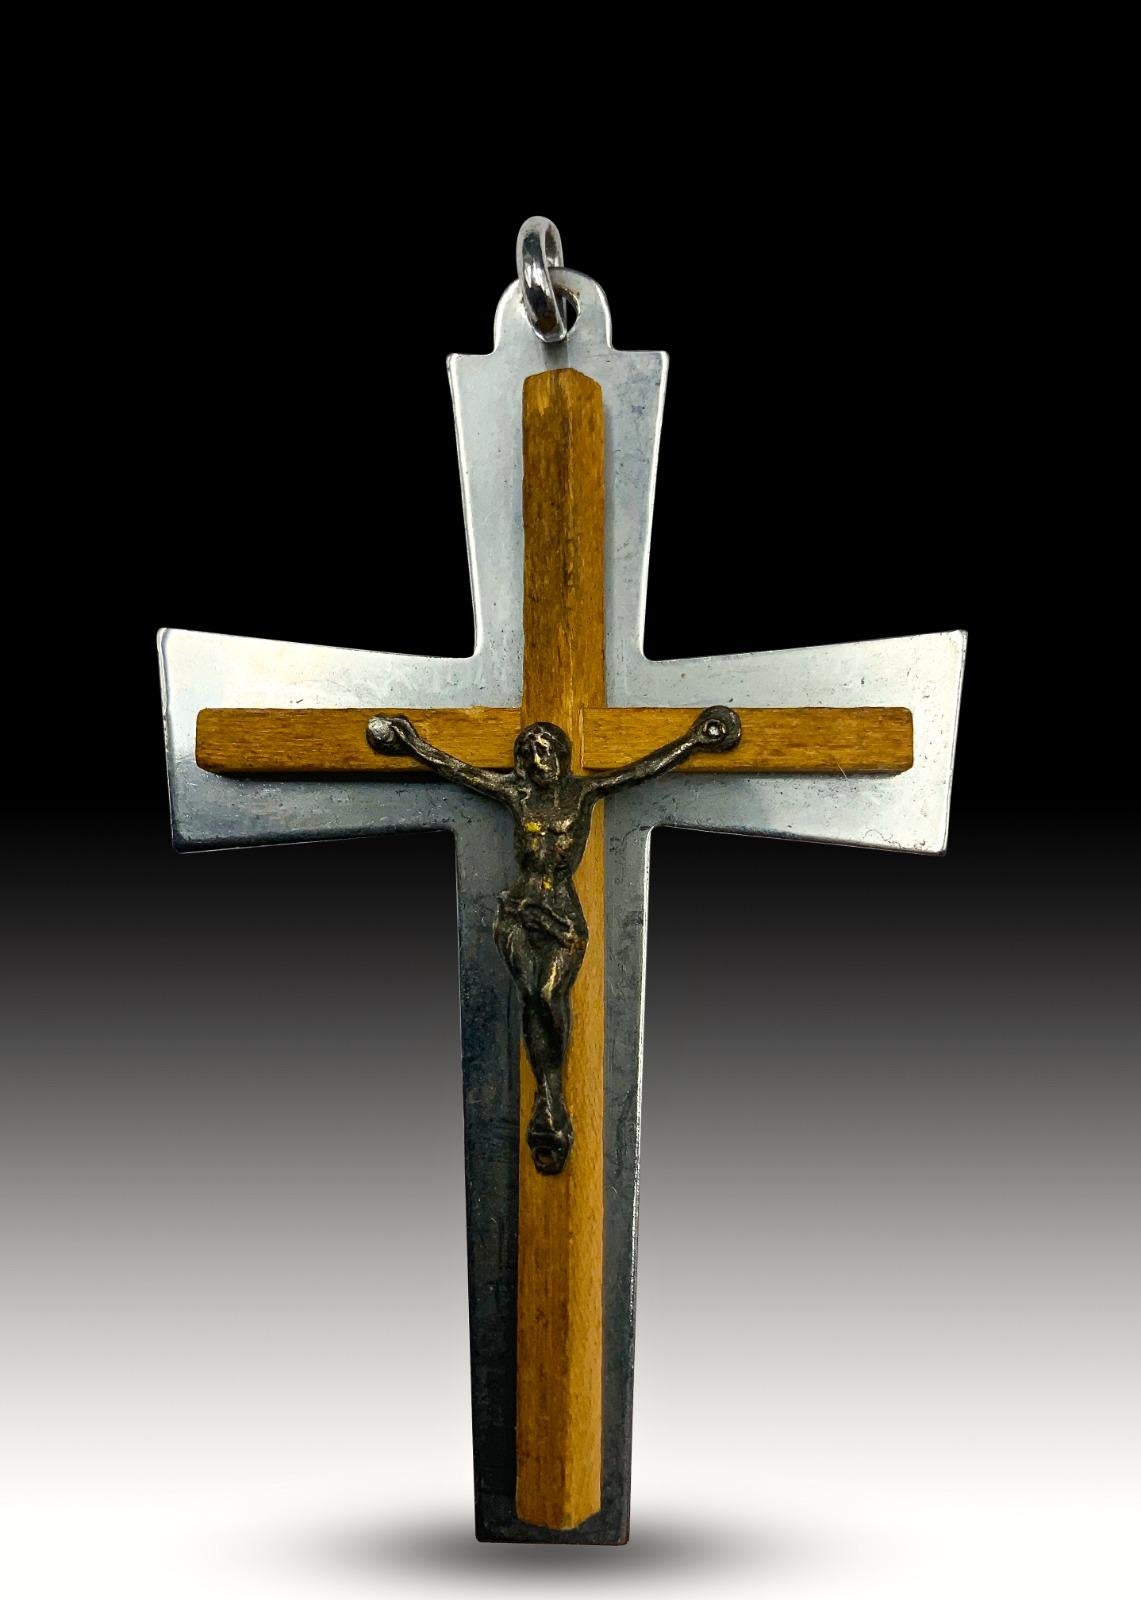 Croix du 19e siècle.
Fabriqué en bois d'olivier et en métal argenté. Dimensions : 8x5 cm.
Bon état.